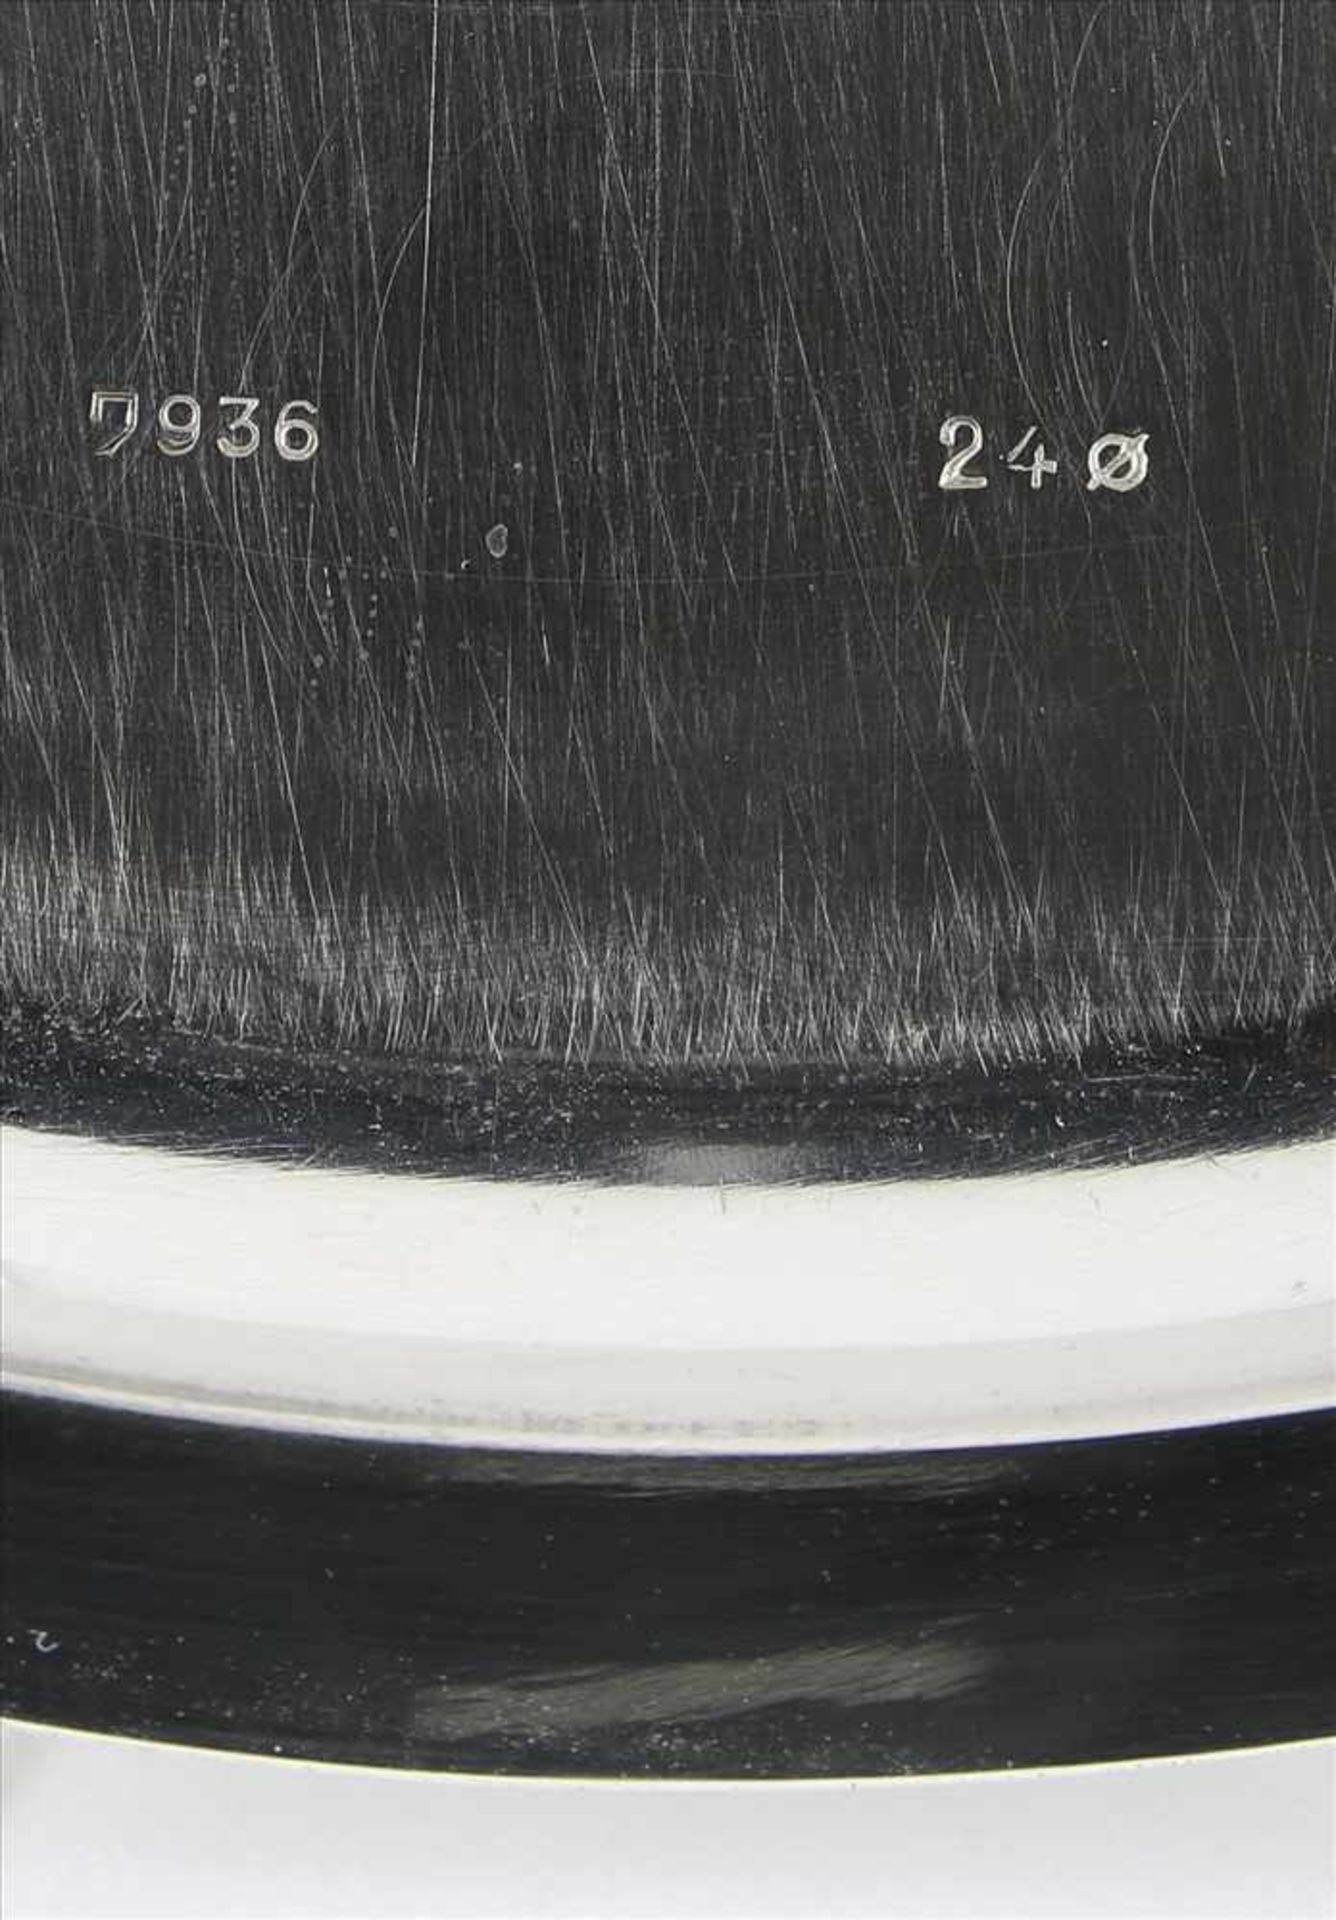 SilbertablettDeutsch. Silber 925 punziert und Herstellerpunze Wilkens. Durchmesser ca. 24 cm, Höhe - Bild 4 aus 4